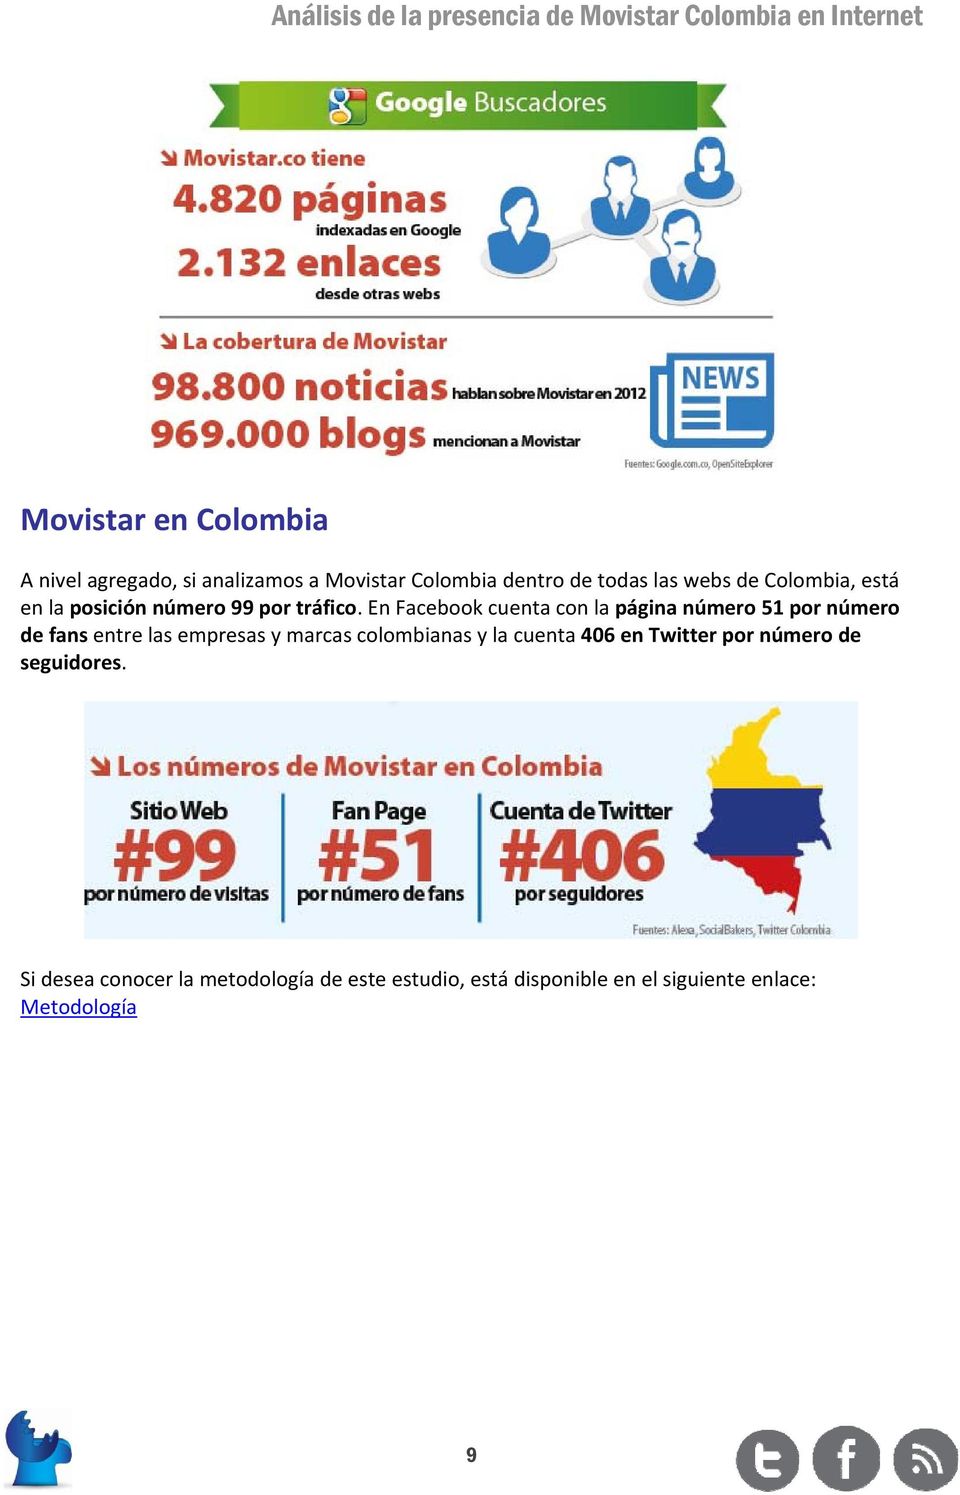 En Facebook cuenta con la página número 51 por número de fans entre las empresas y marcas colombianas